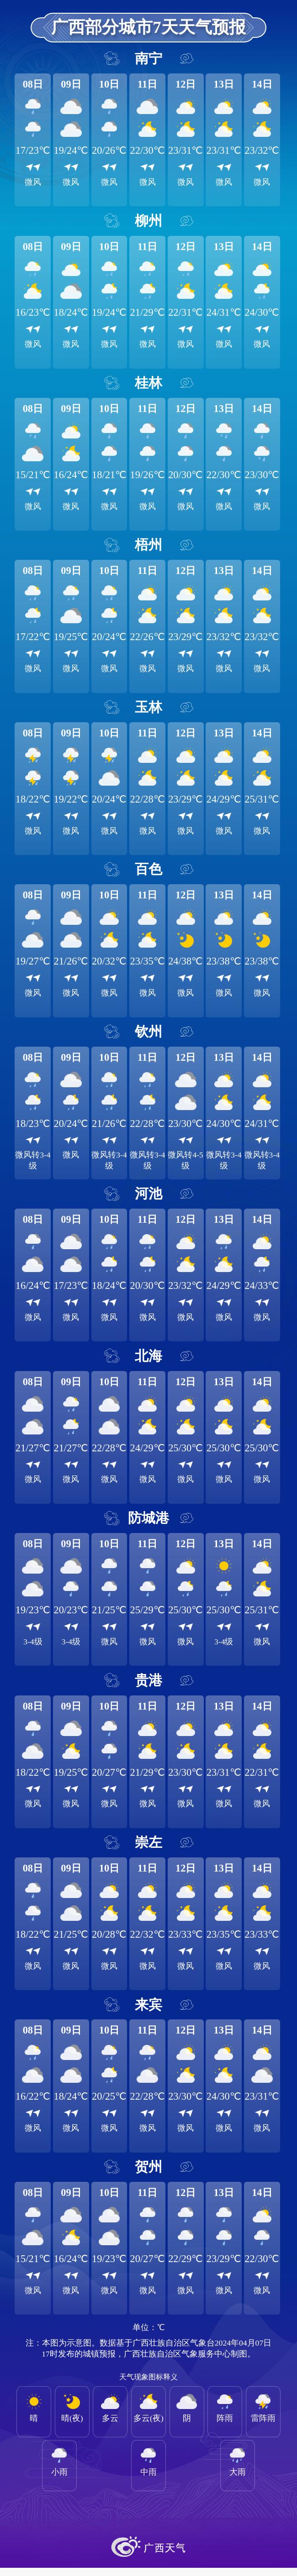 广西部分城市7天天气预报北部湾海面:今天晚上到明天白天,多云,偏北风